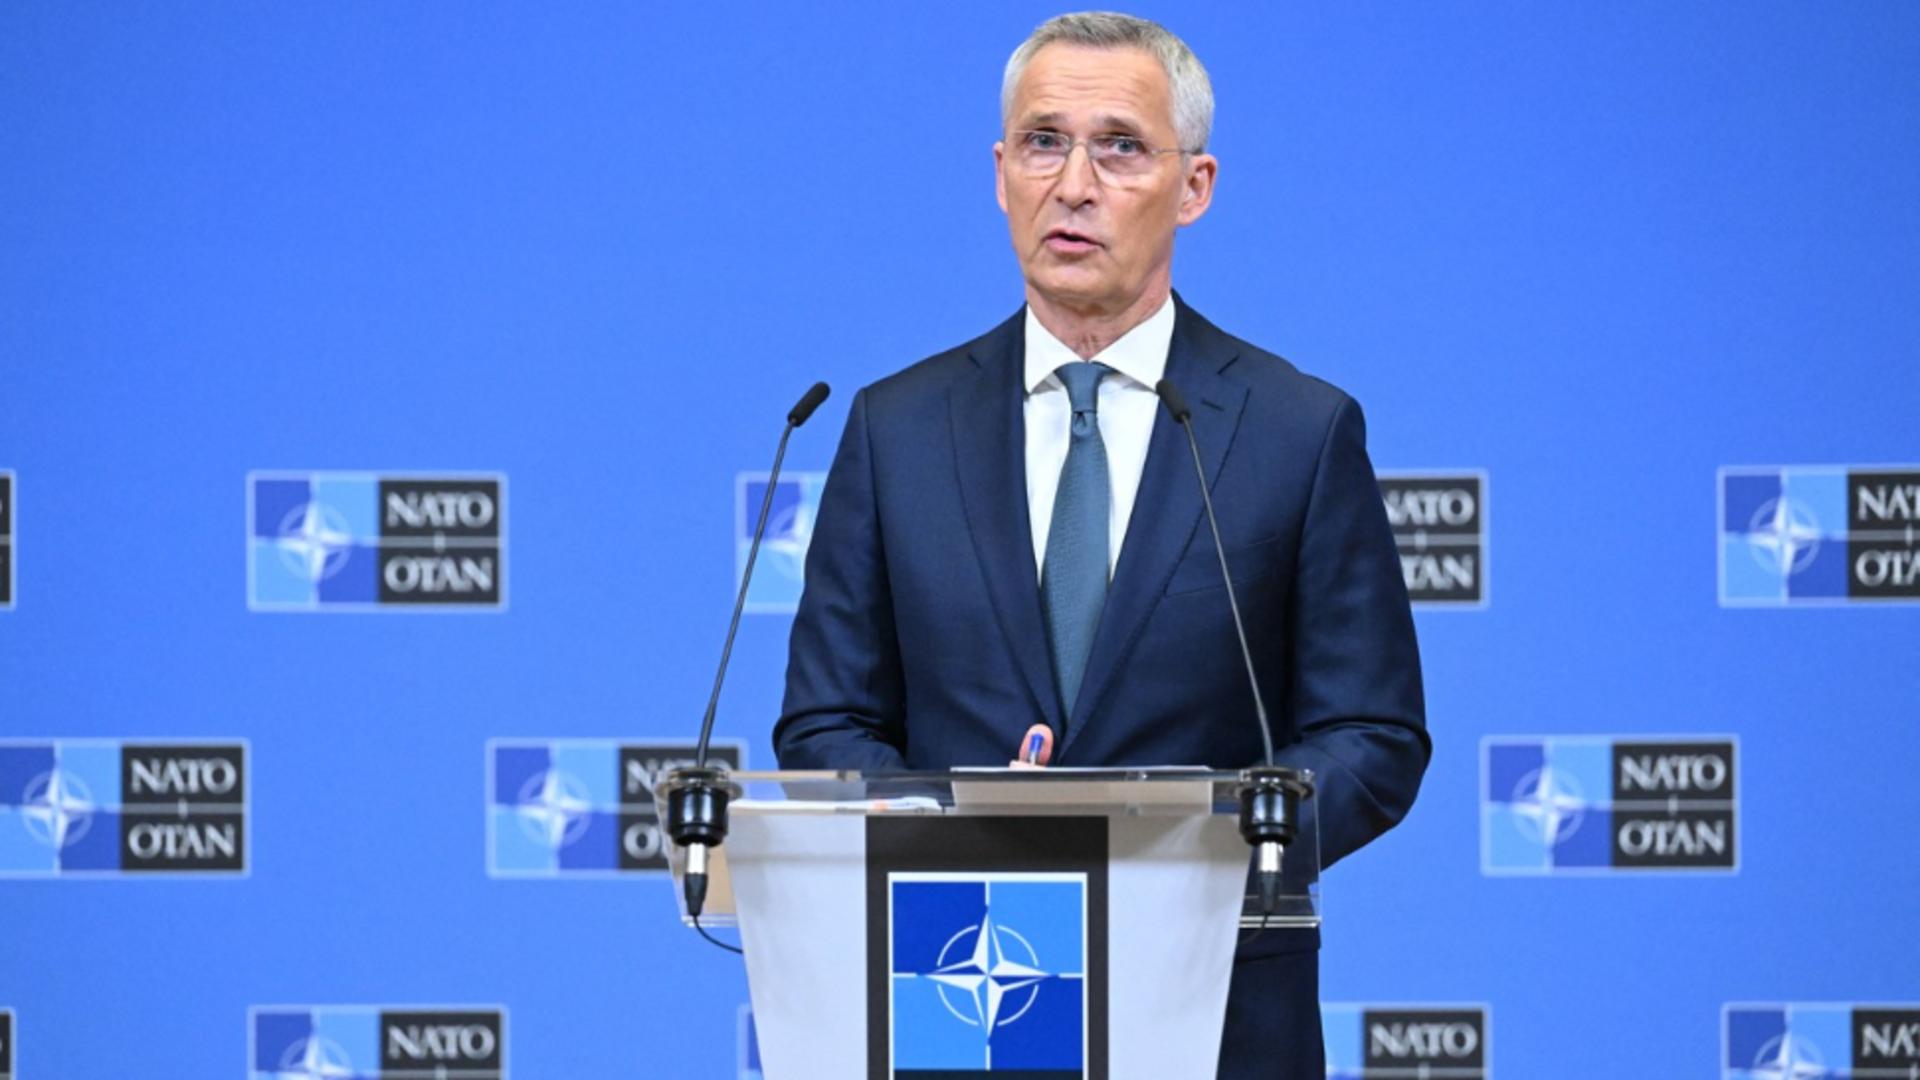 NATO îi taie avântul Ucrainei: La summitul de la Vilnius îi va oferi o „apropiere”, dar nu și o aderare la alianță Foto: Profimedia